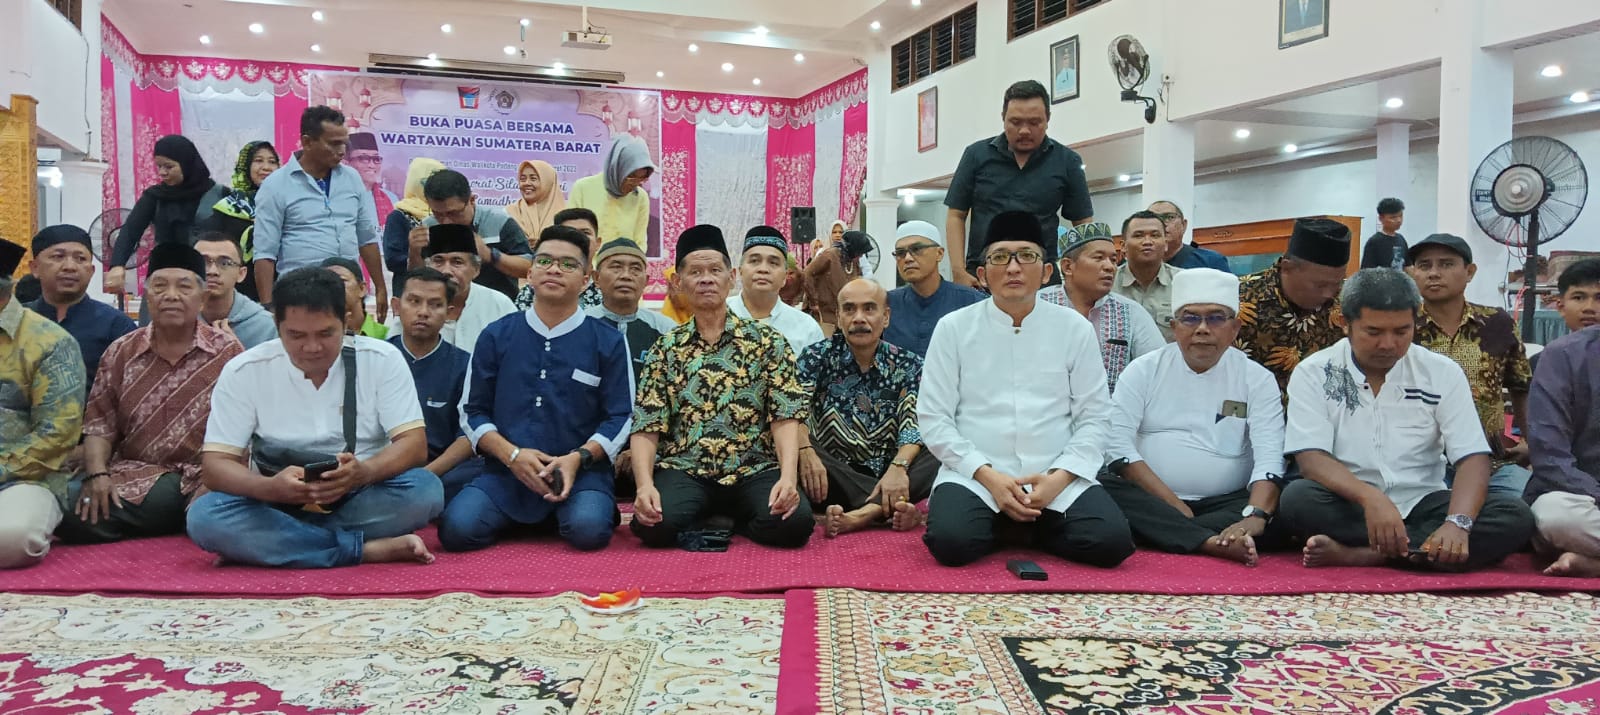 Walikota Padang Hendri Septa berbuka puasa bersama Wartawan